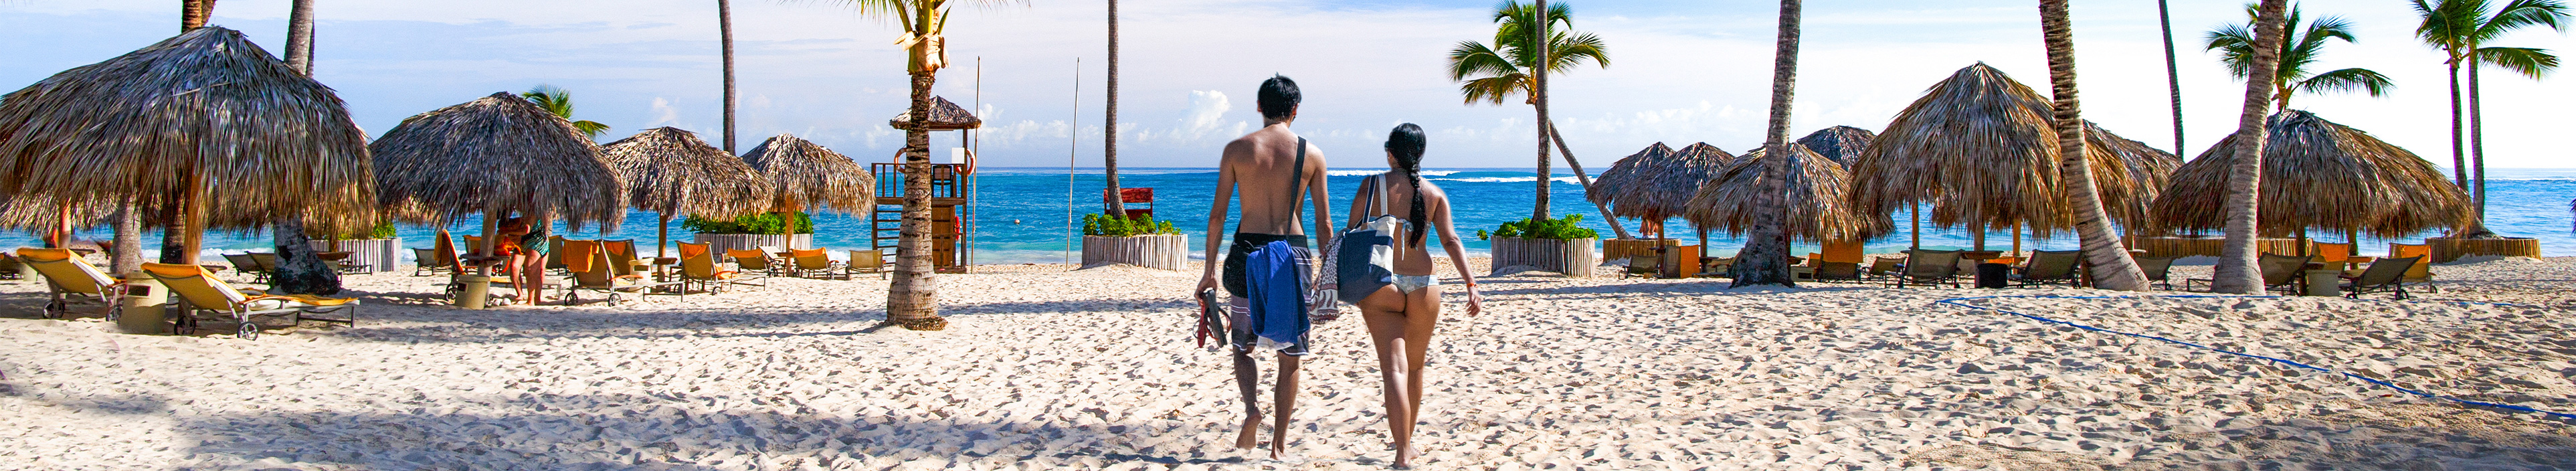 Paar an einem Strand in der Dominikanischen Republik